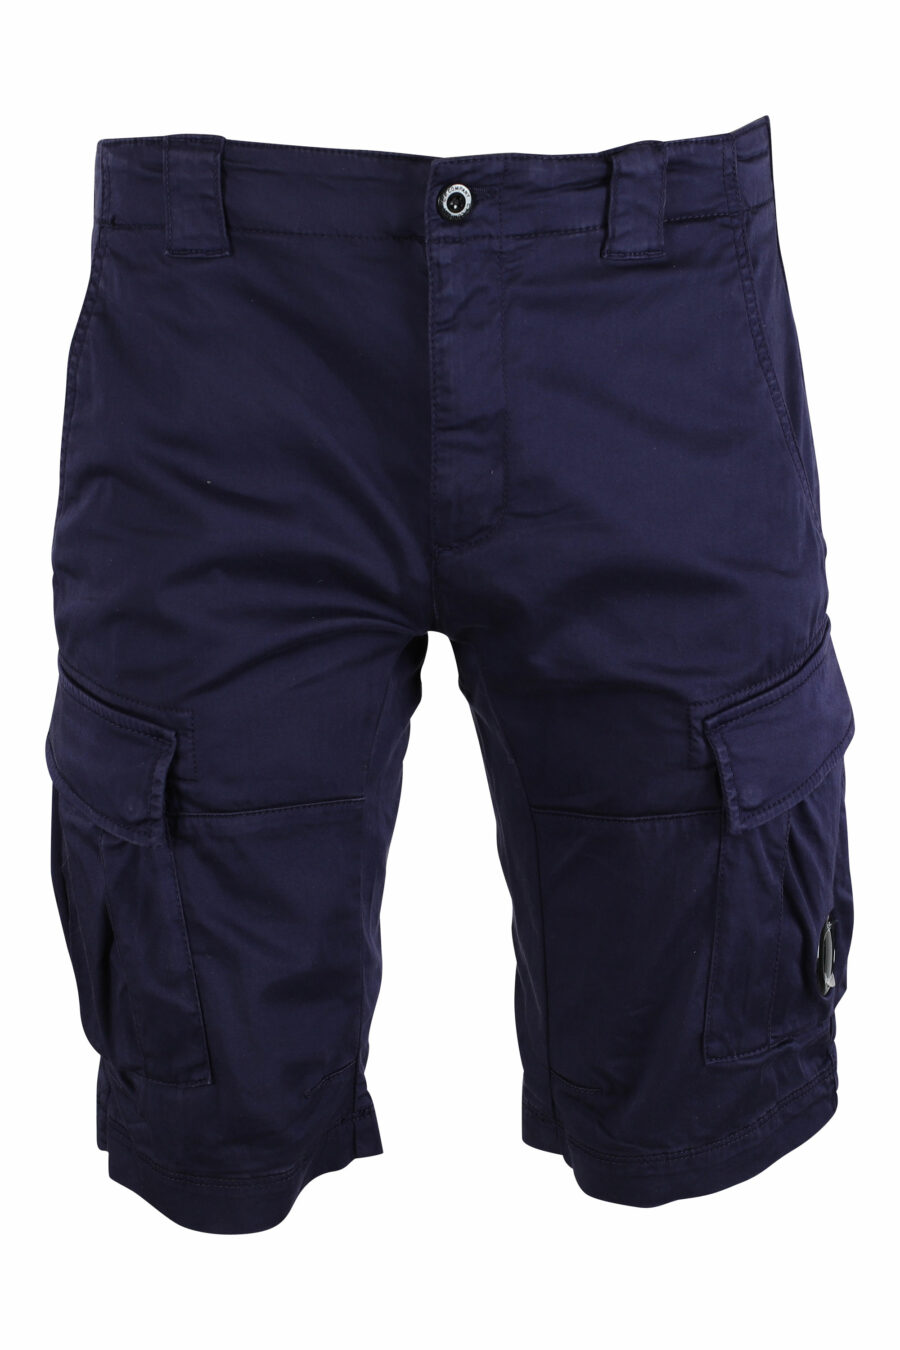 Pantalón corto azul oscuro estilo cargo con minilogo circular - IMG 9489